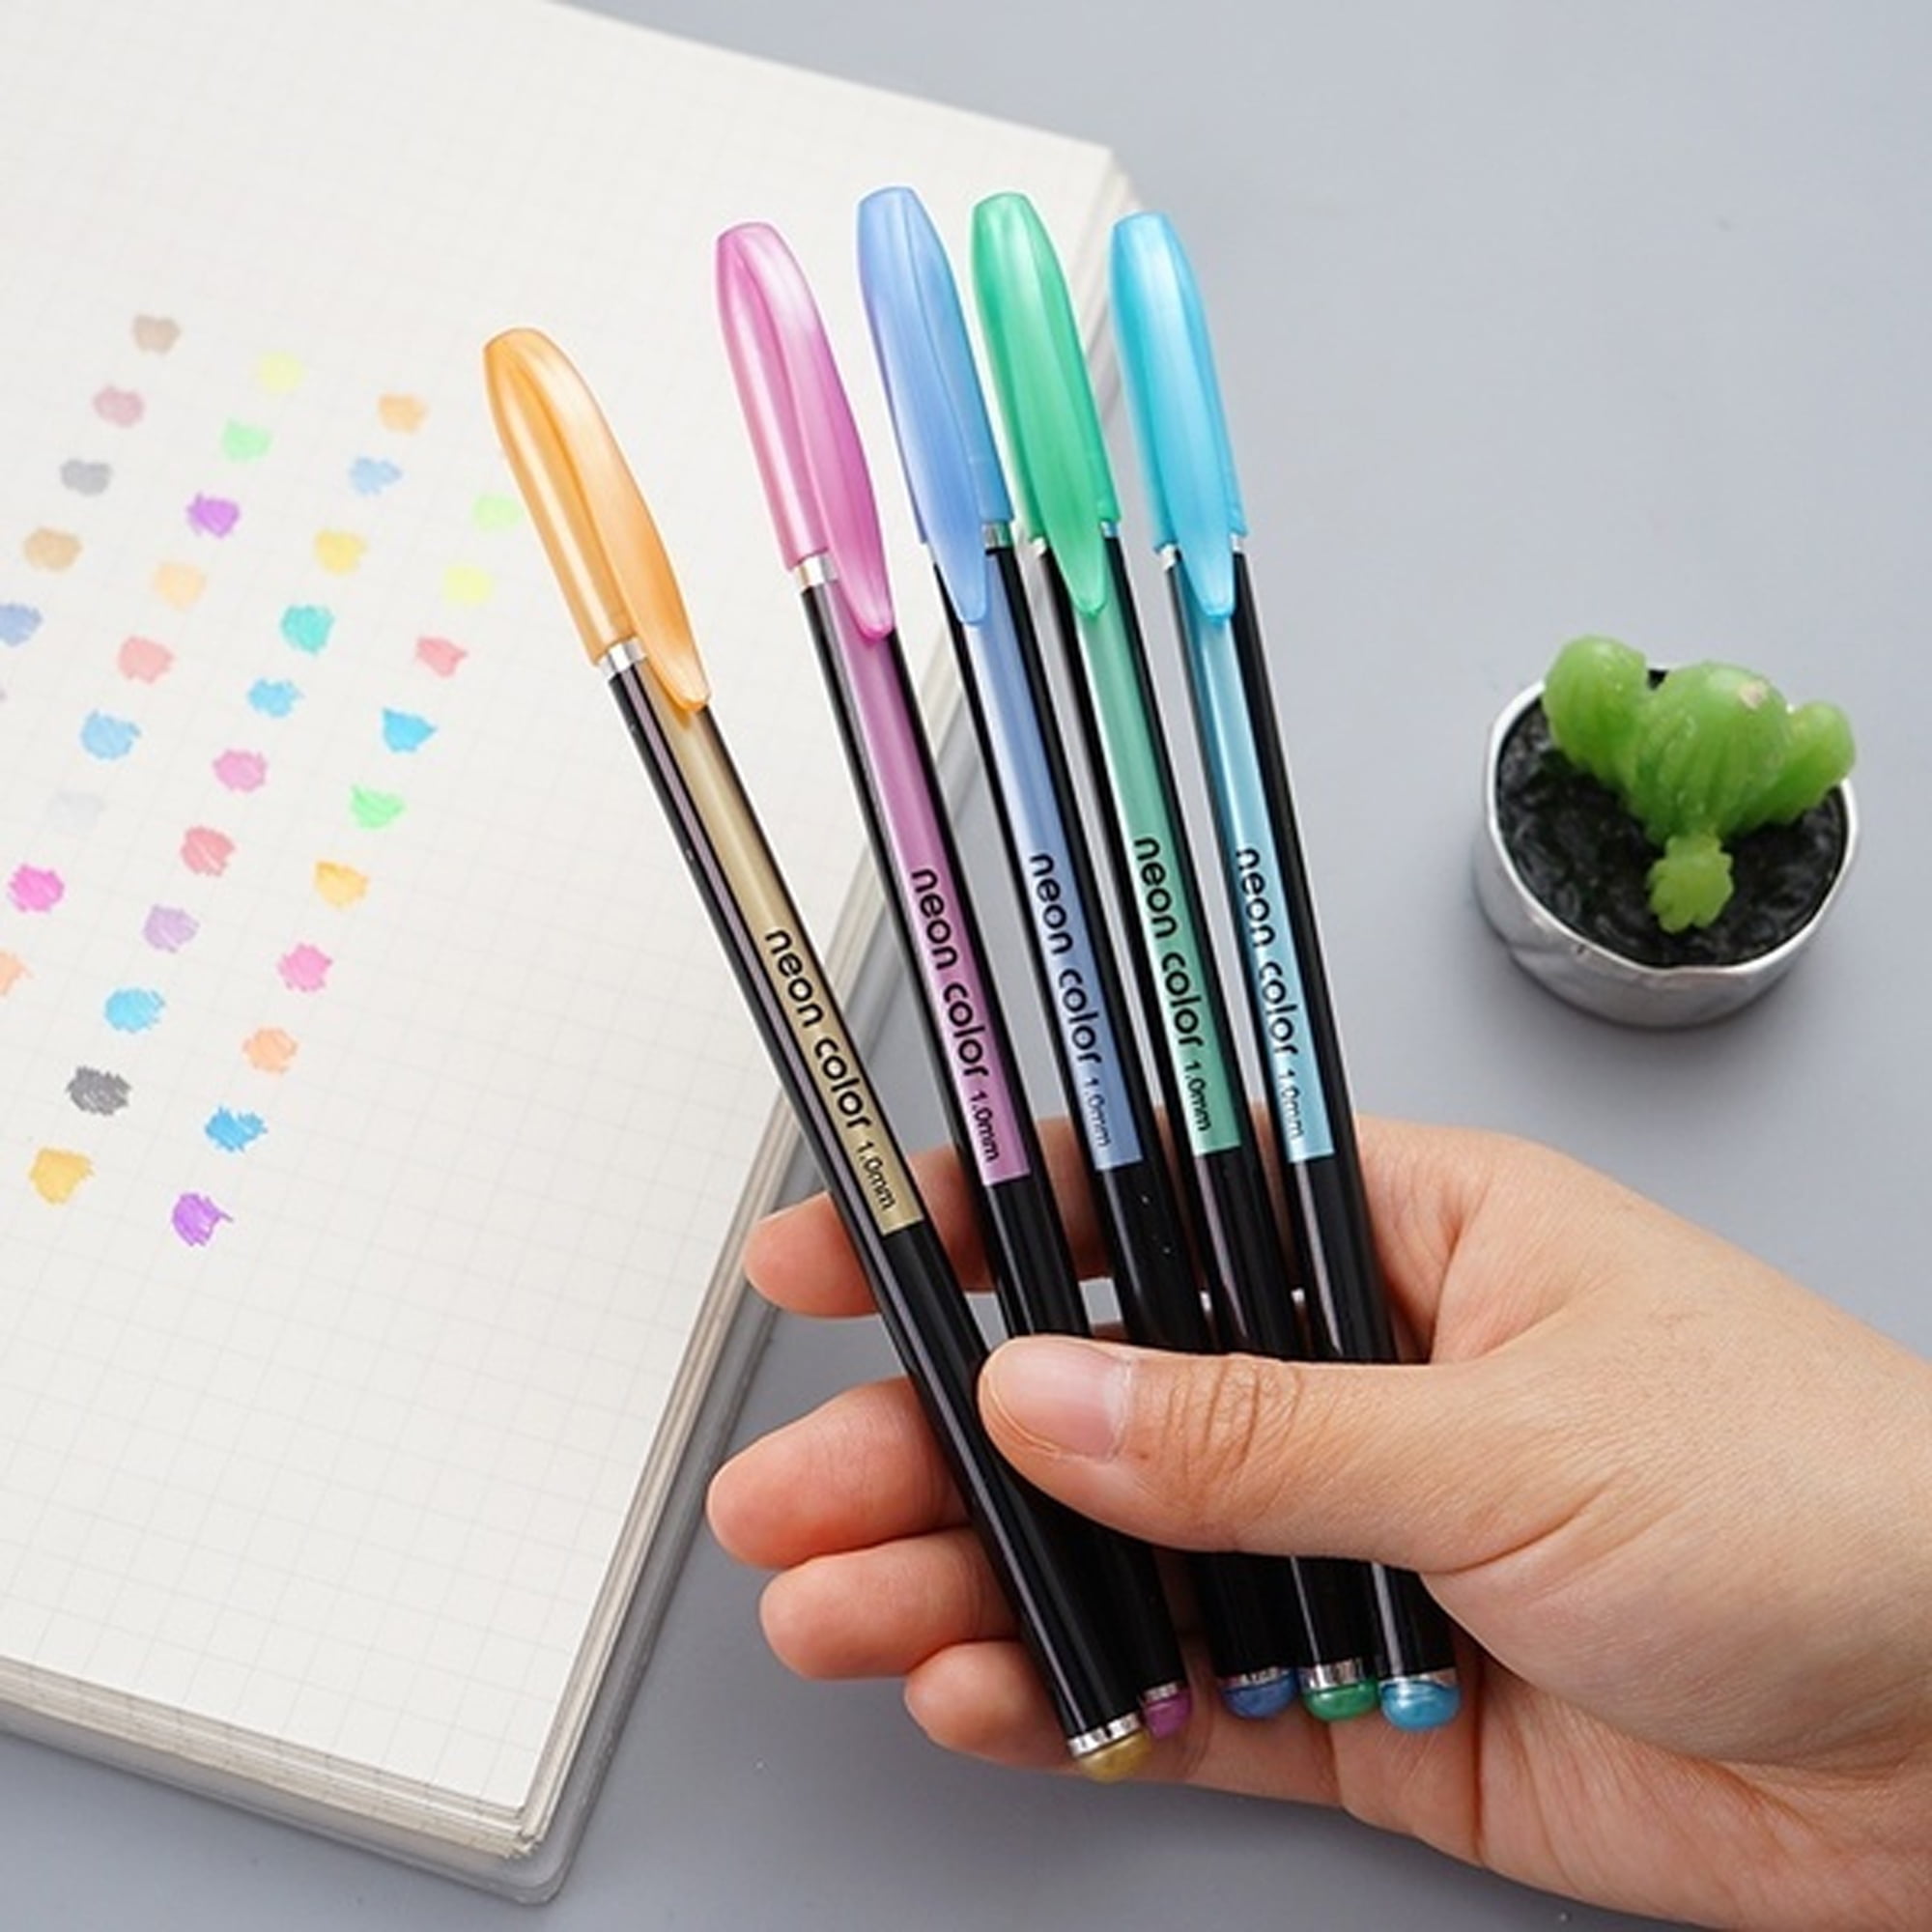 48 Colors Set DIY Gel Pens Highlighter Marker Pen Watercolor Pen Glitter  Gel Pen for Adult Coloring Books Journals Drawing Doodling Art Markers 